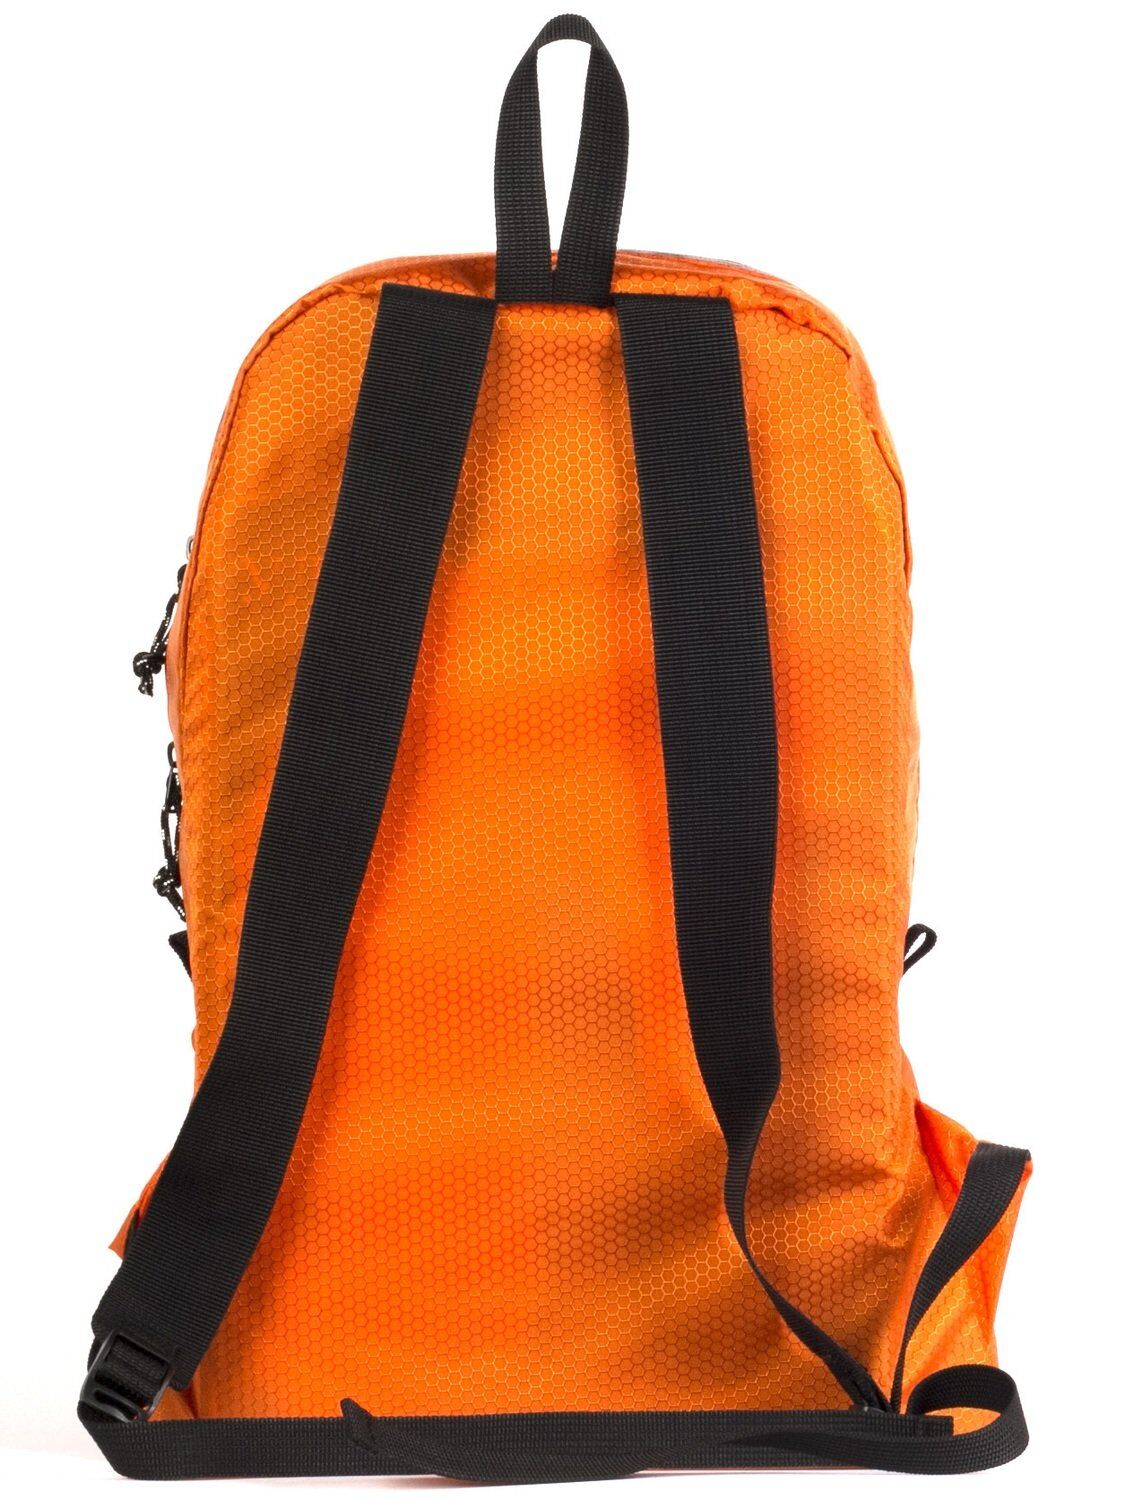 Рюкзак Daypack m Minimal оранжевый апельсиновый